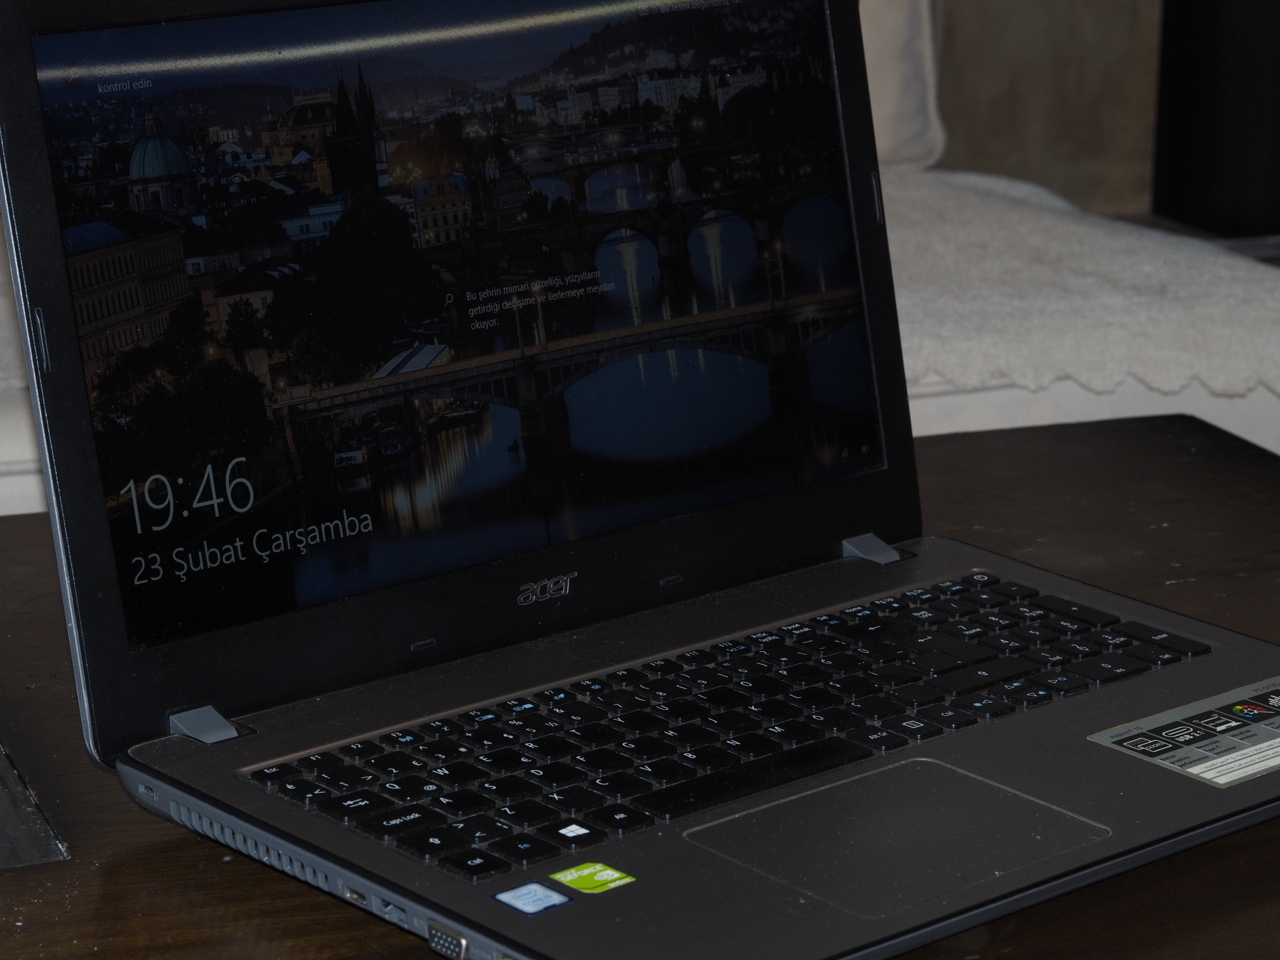 Acer İ5-7200U 940MX Dizüstü Bilgisayar | DonanımHaber Forum